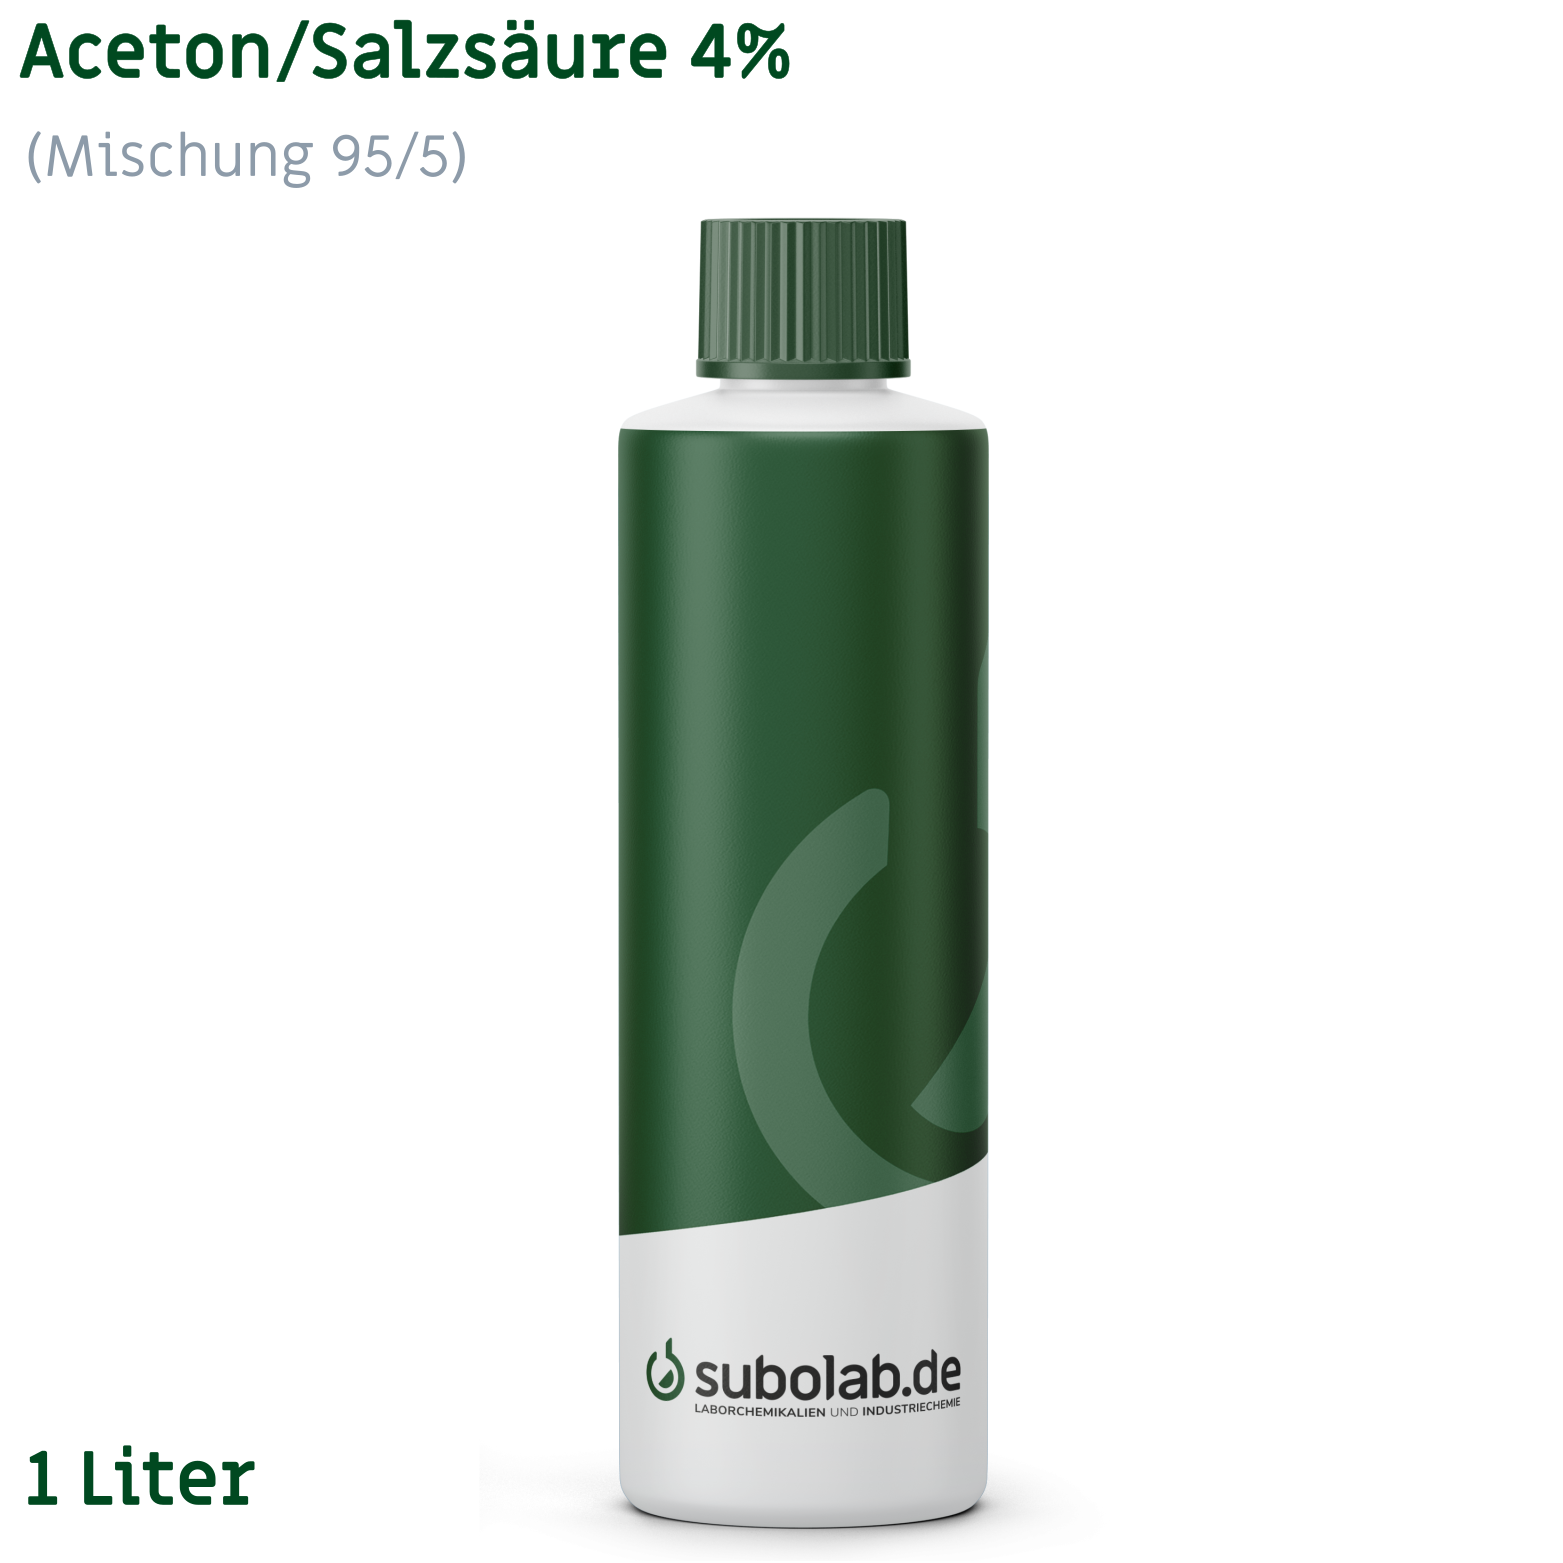 Bild von Aceton/Salzsäure 4% (Mischung 95/5) (1 Liter)